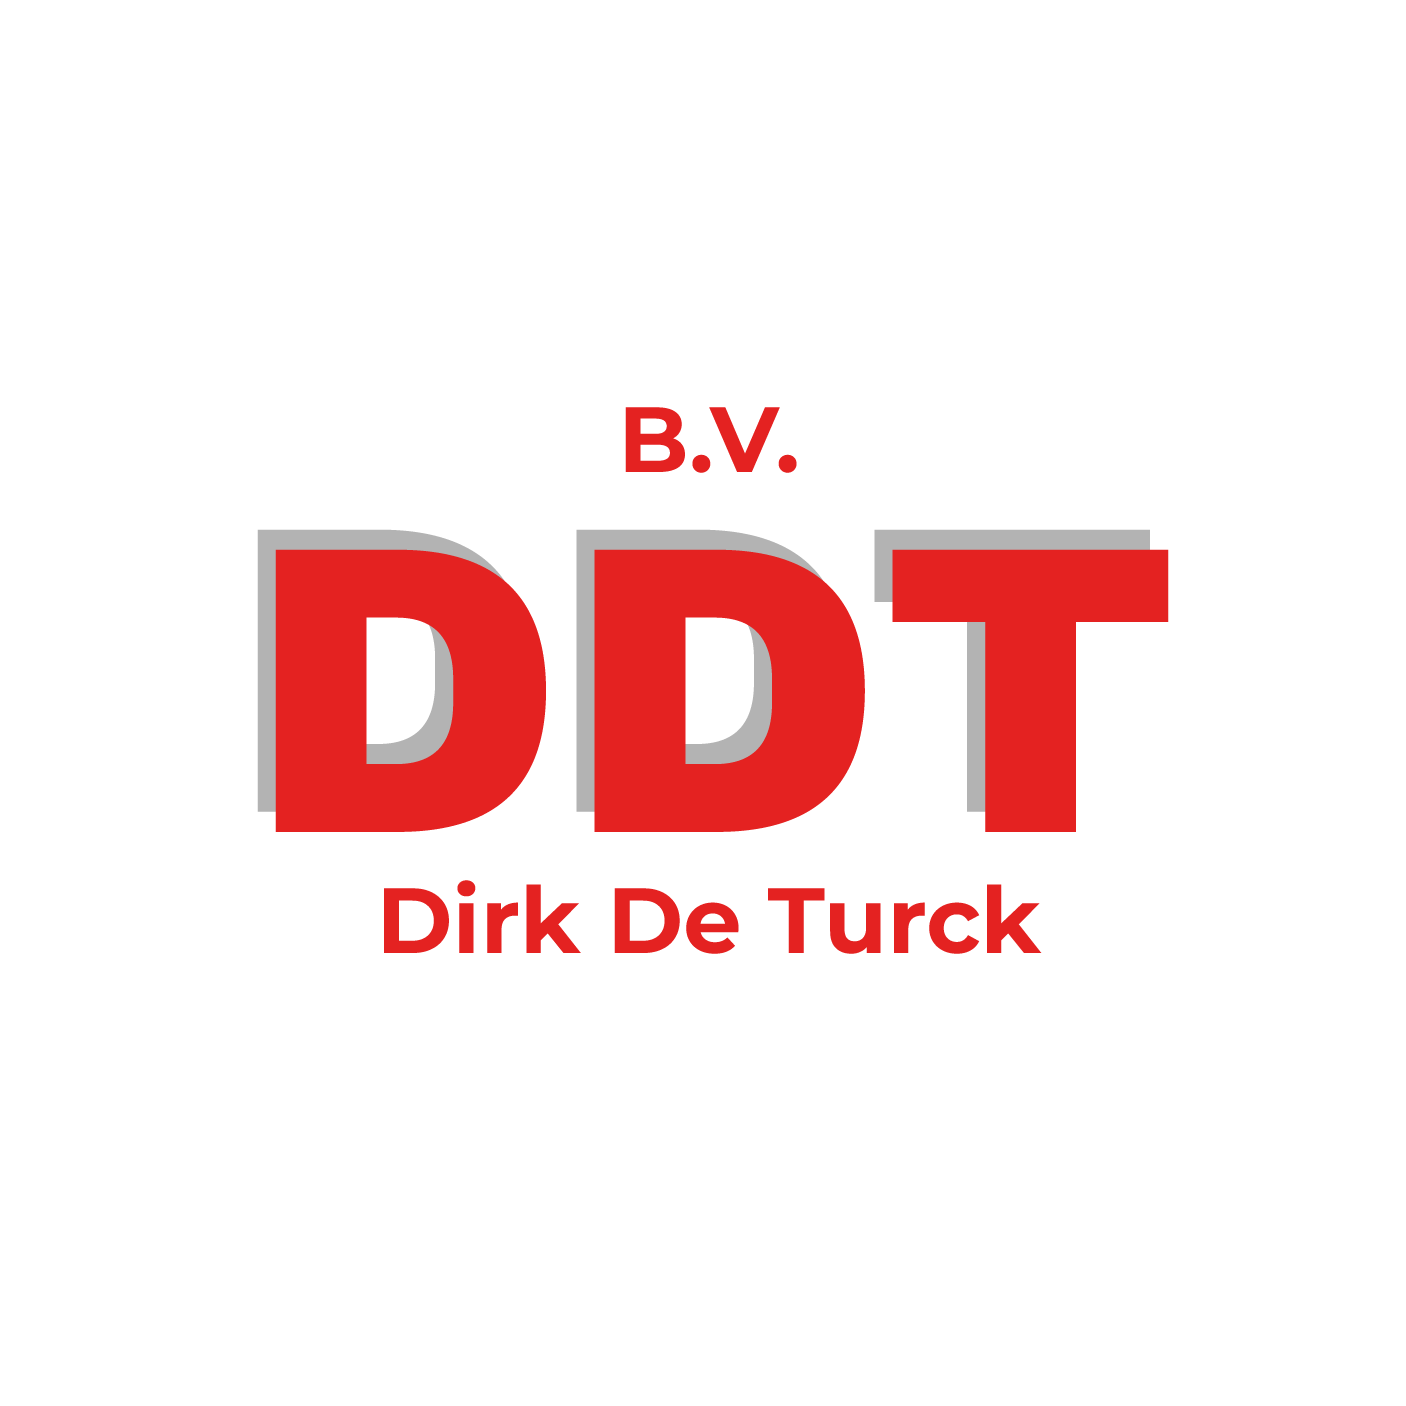 DDT Technieken